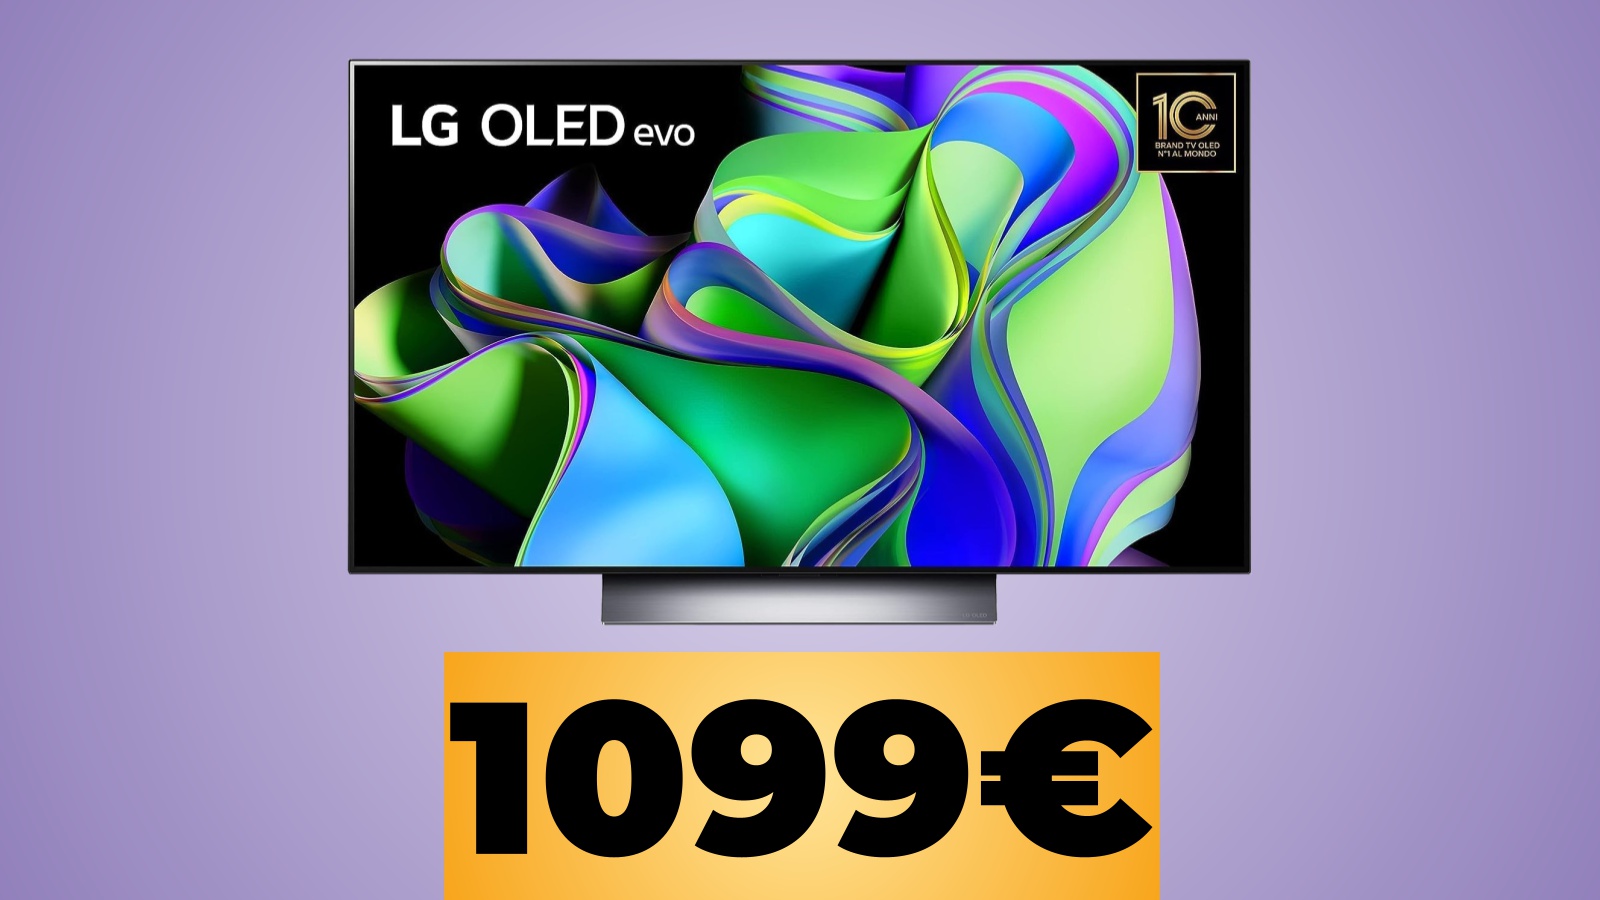 Smart TV LG OLED evo 48 pollici in 4K/120Hz con VRR in sconto su Amazon al miglior prezzo